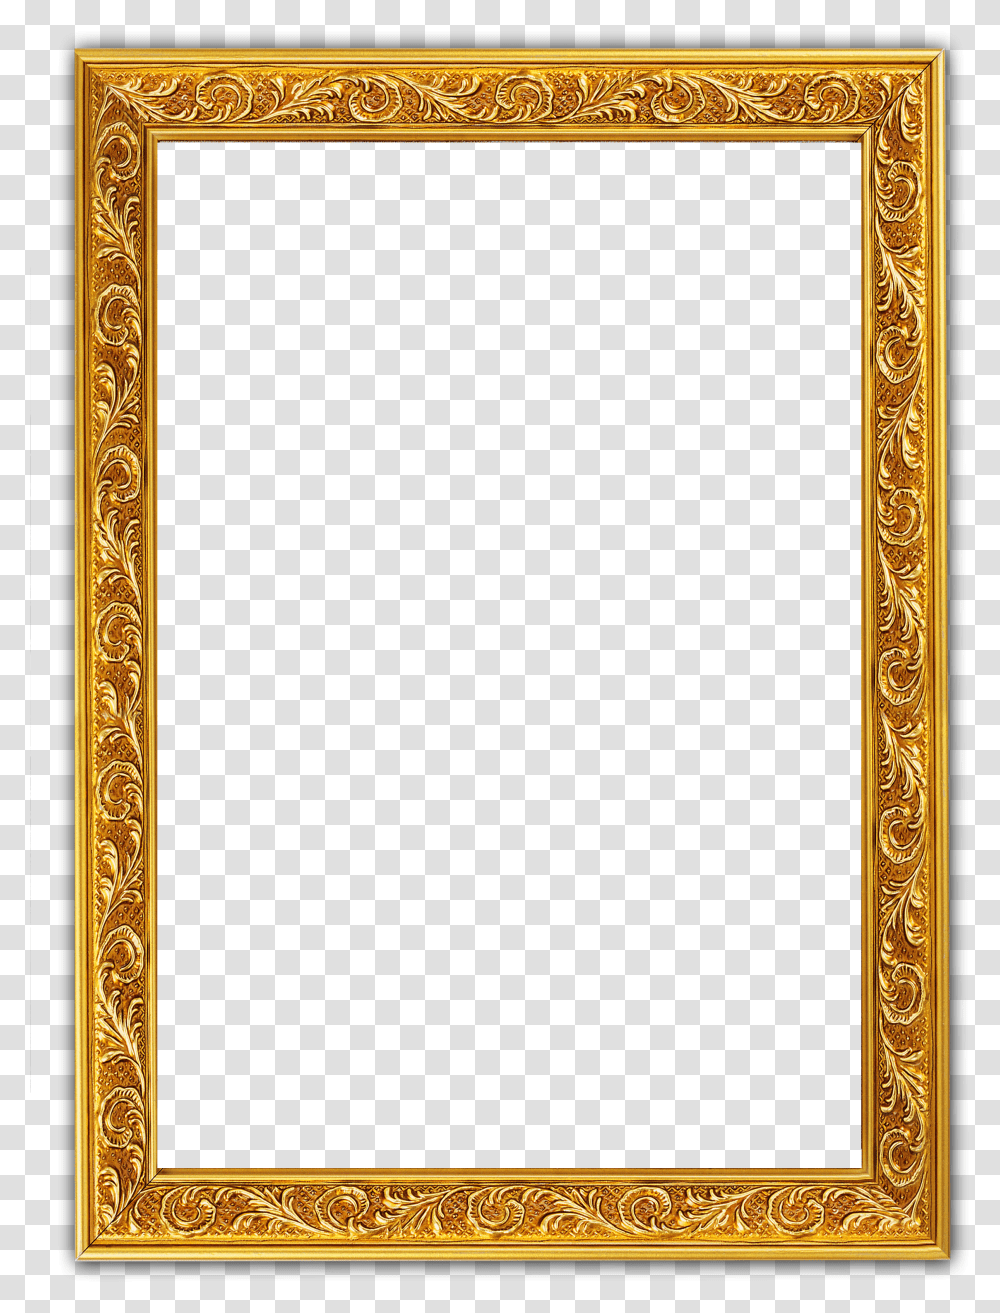 Golden Frame Design Transparent Png – Pngset.com